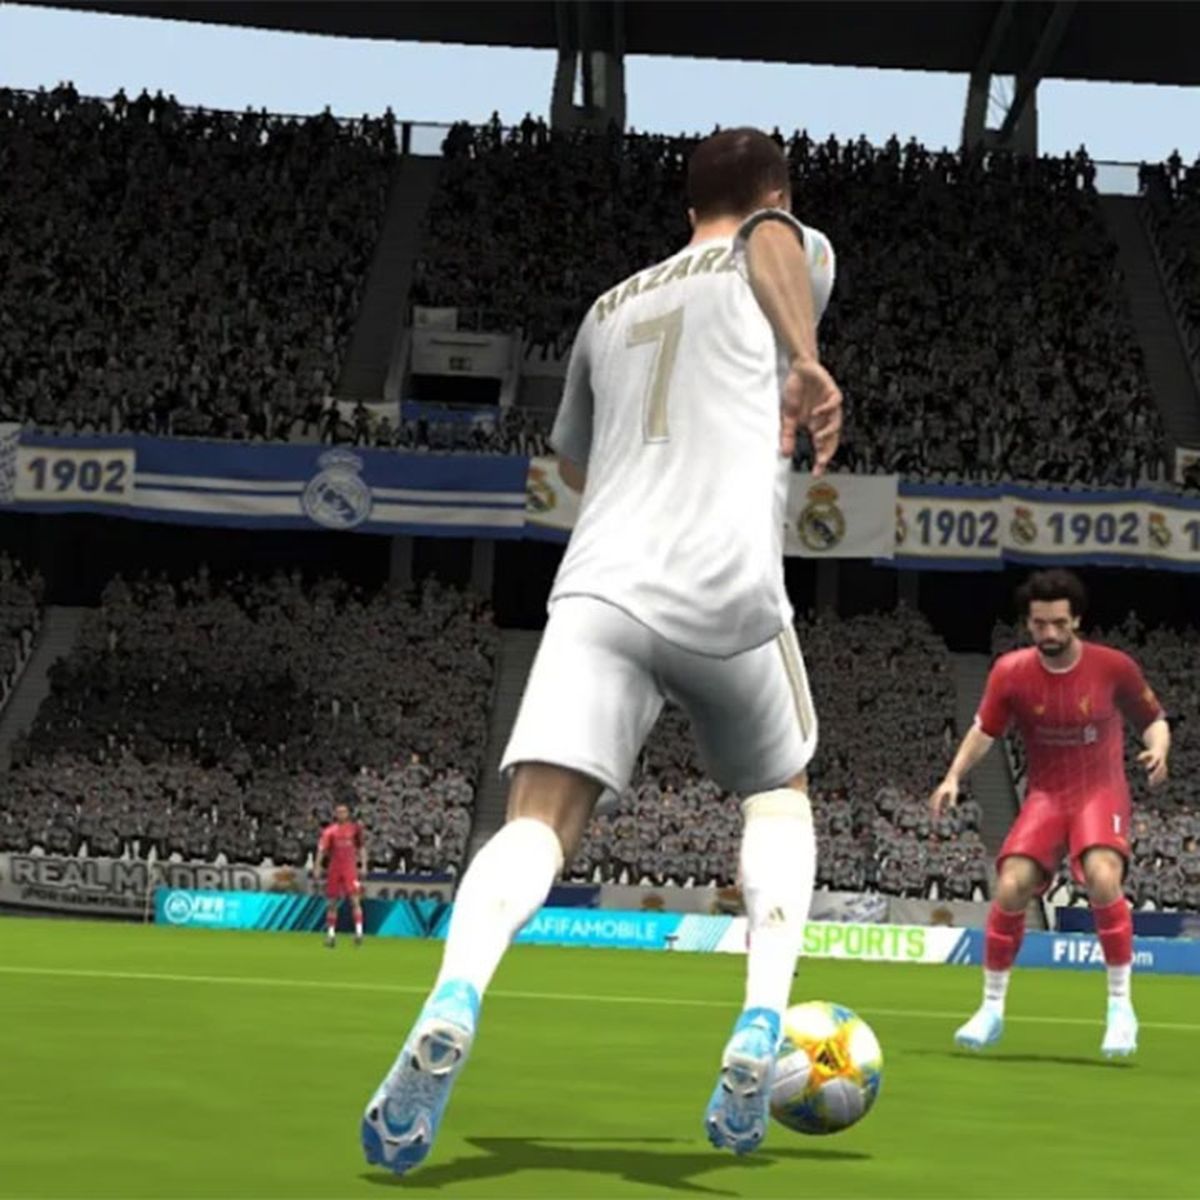 Requisitos mínimos para jugar FIFA 21